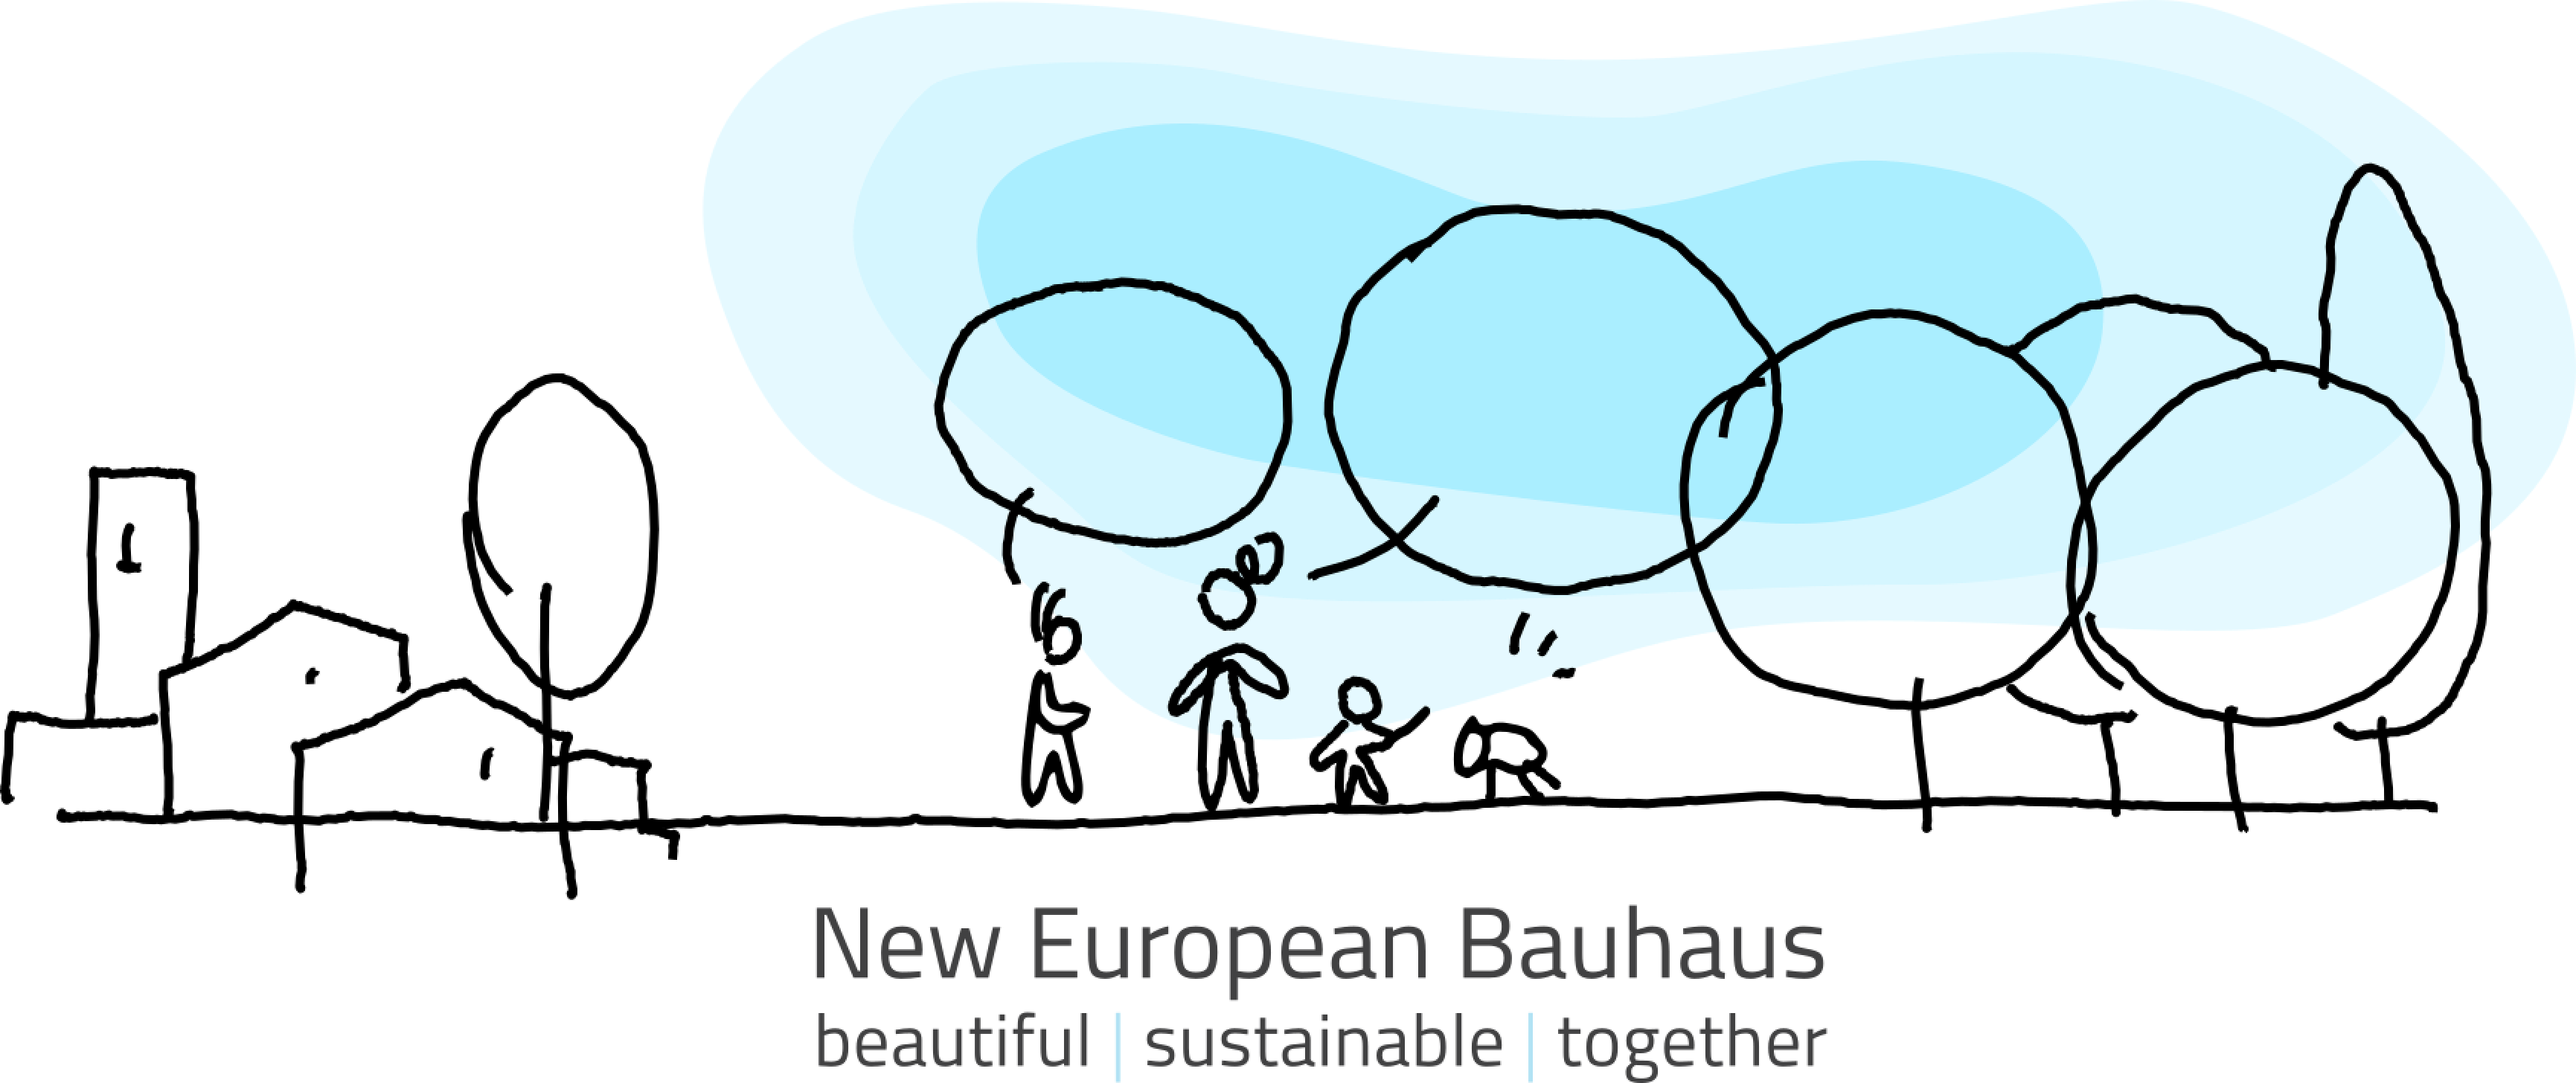 The New European Bauhaus Initiative, with Ruth Reichstein, I.D.E.A.